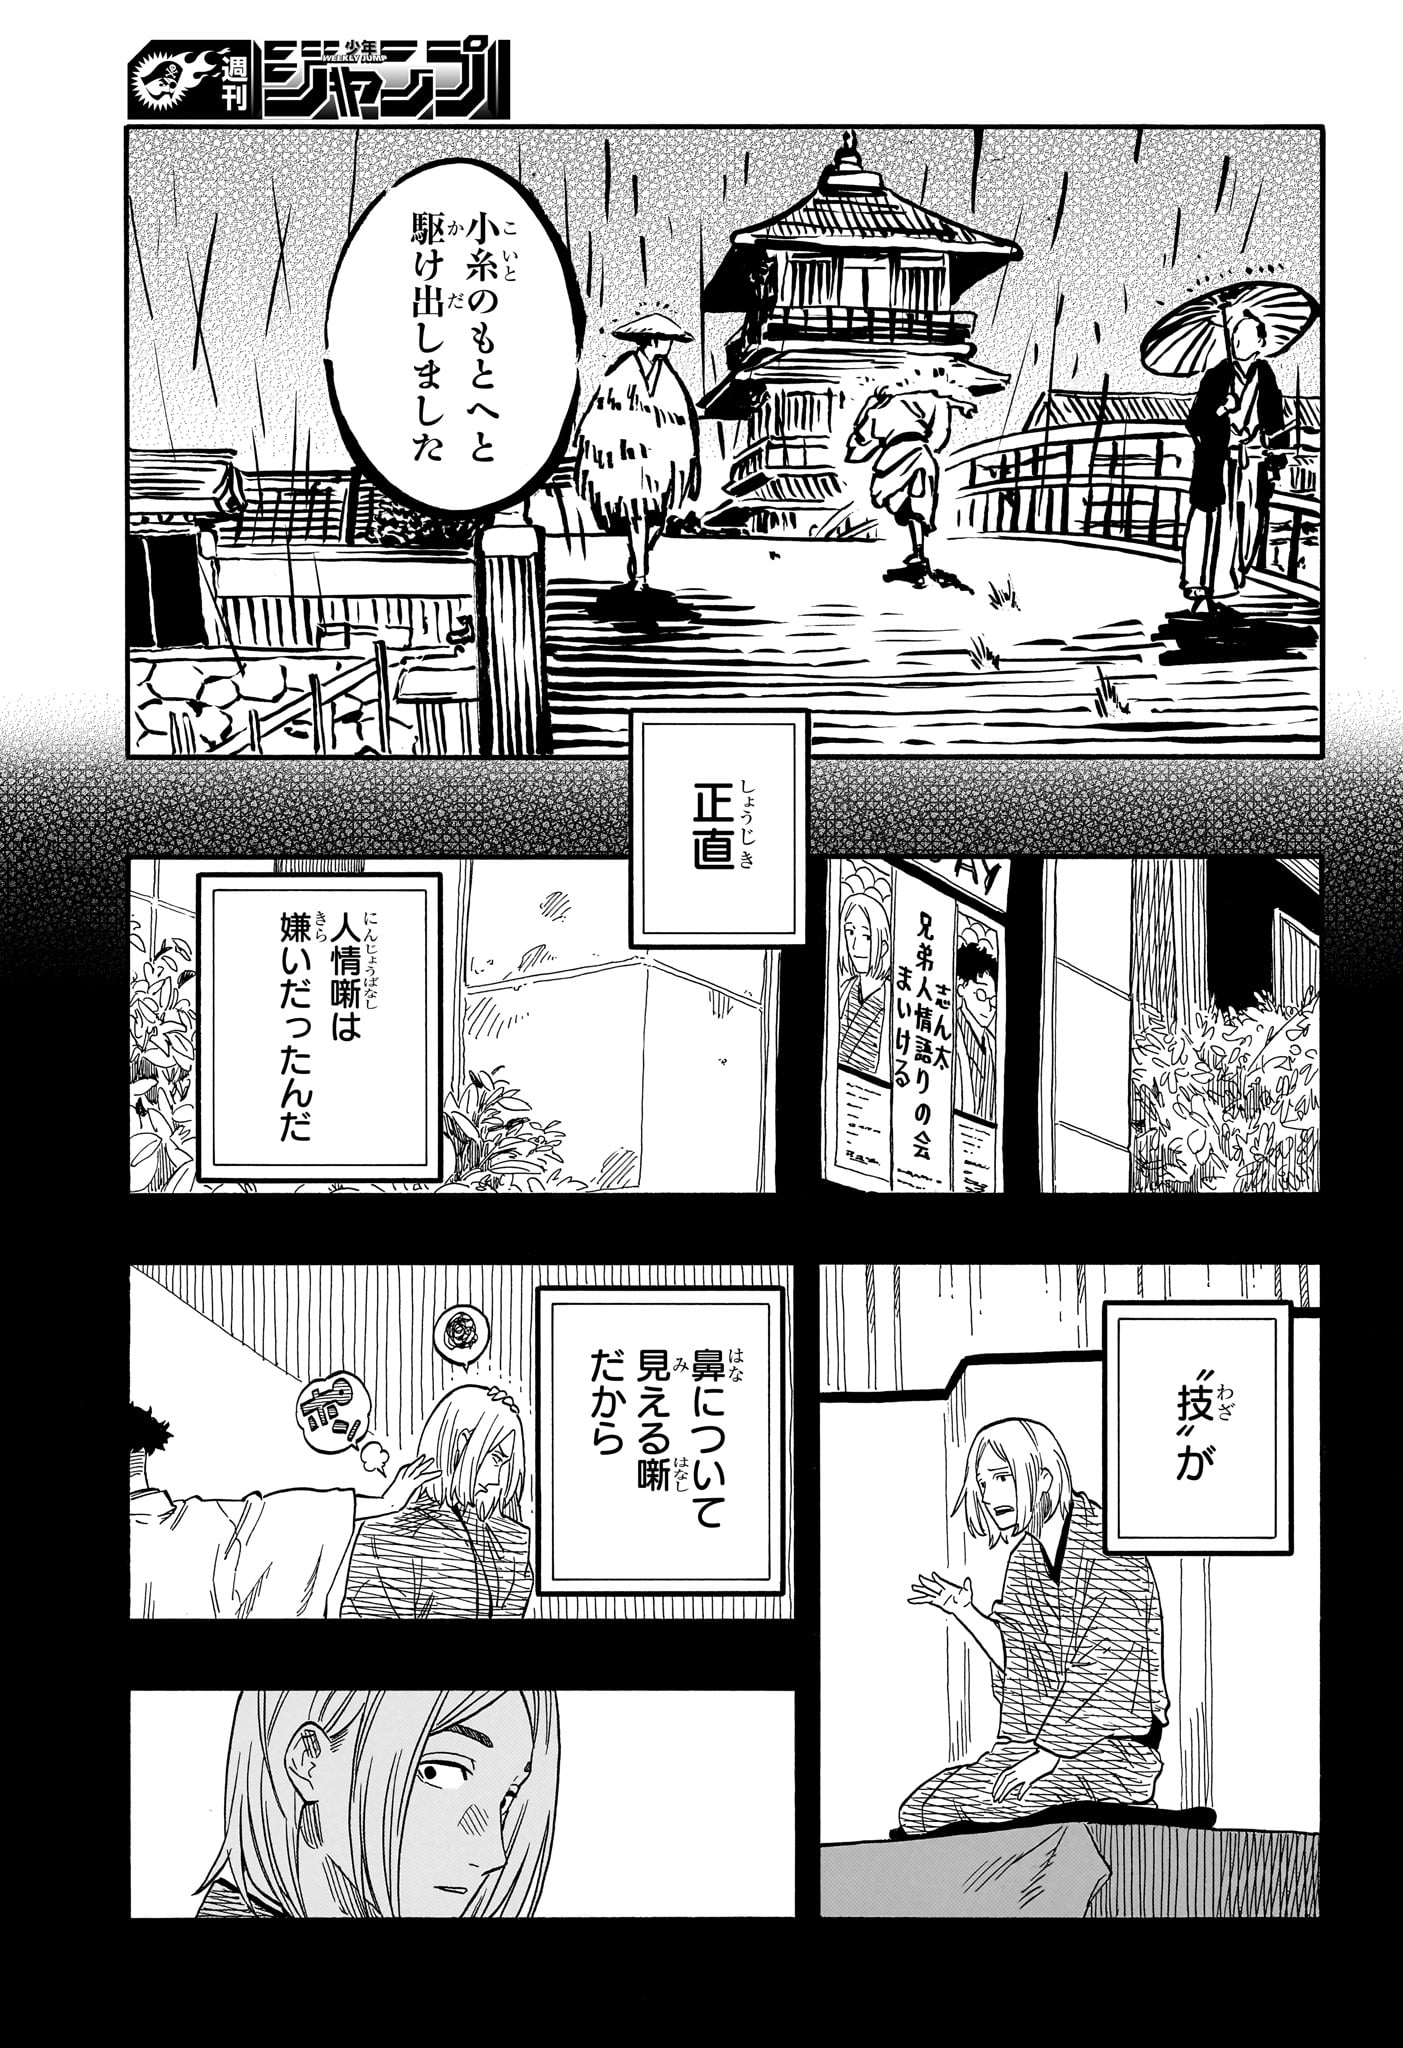 Akane-Banashi - Chapter 114 - Page 7